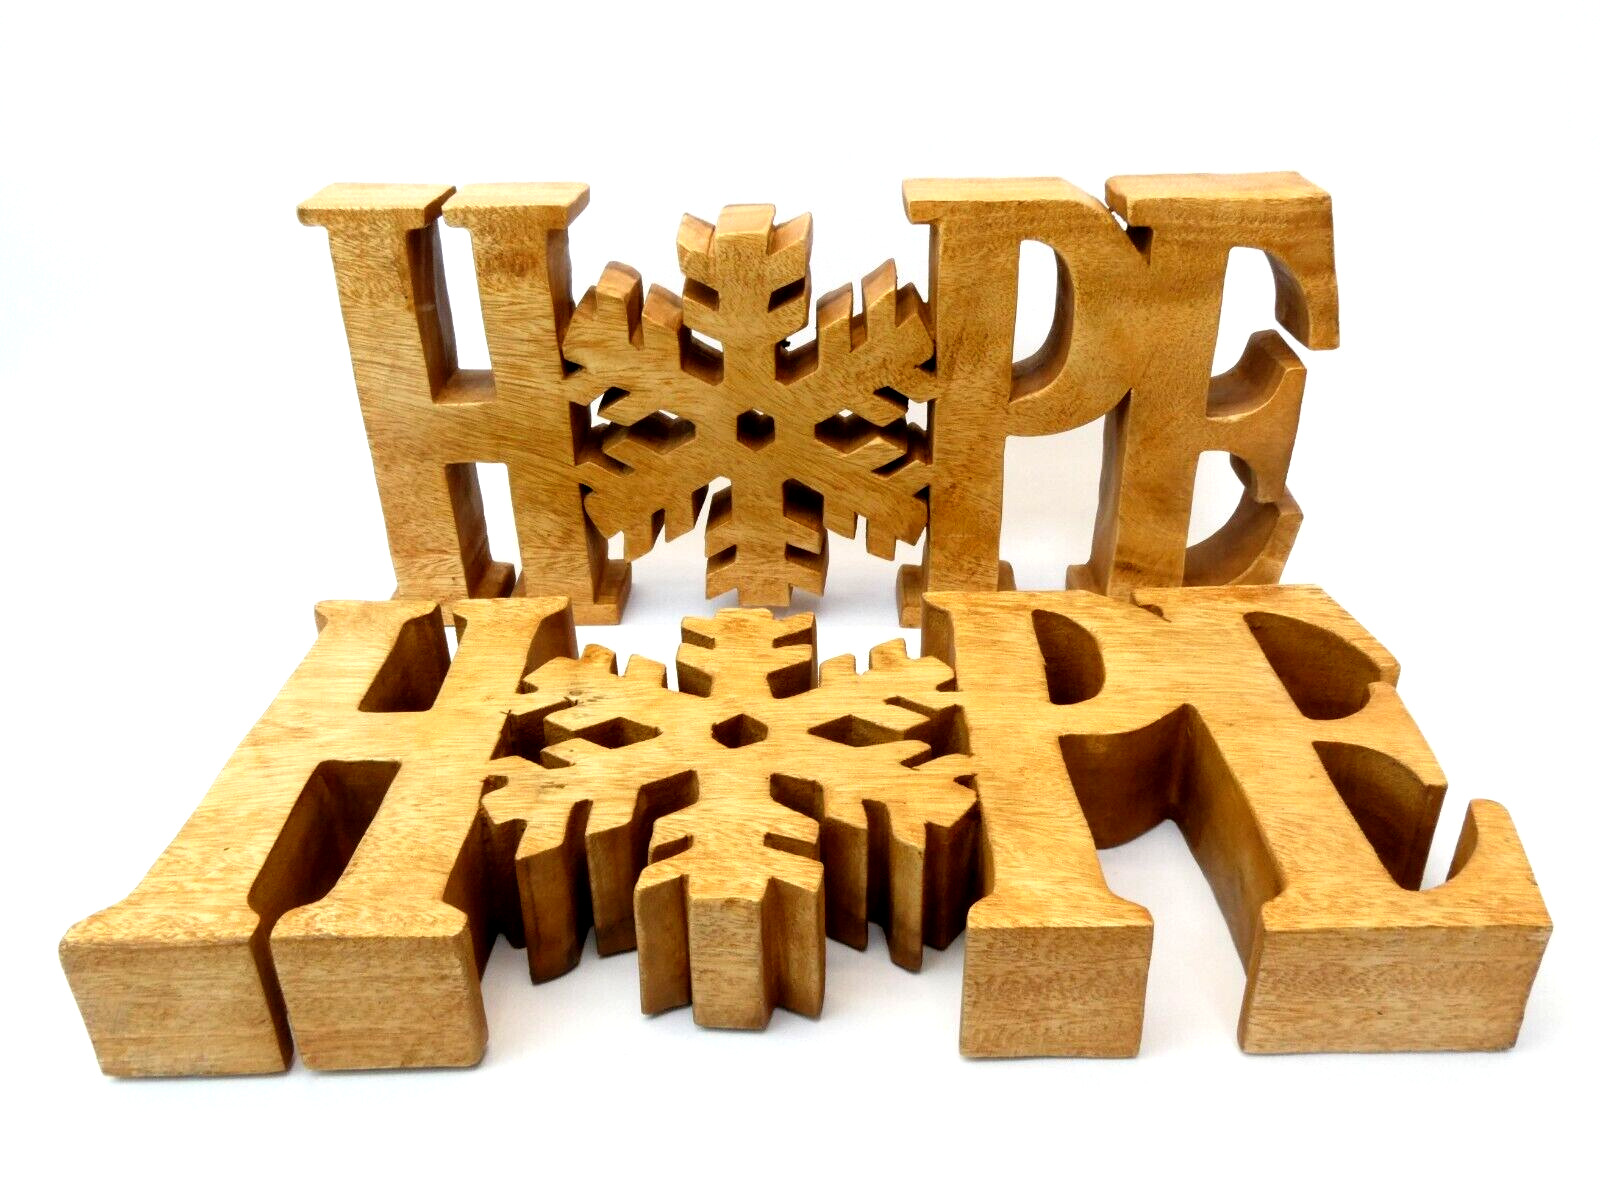 Pair Vintage Snowflake Hope Decorative Signs Stands Displays Christmas Wood